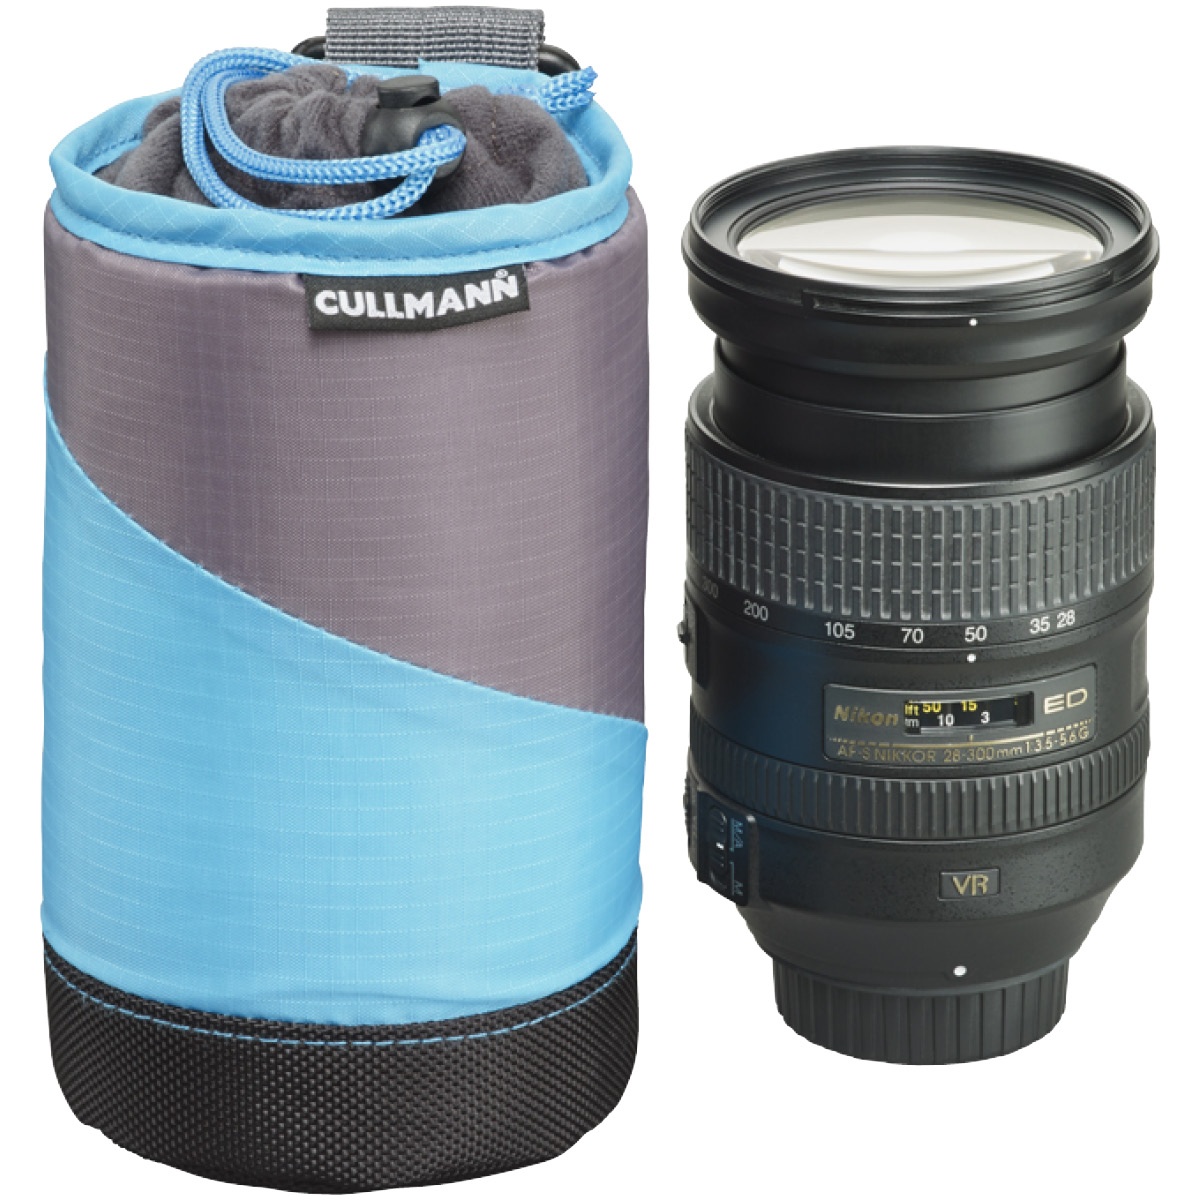 Cullmann Lens Container Medium